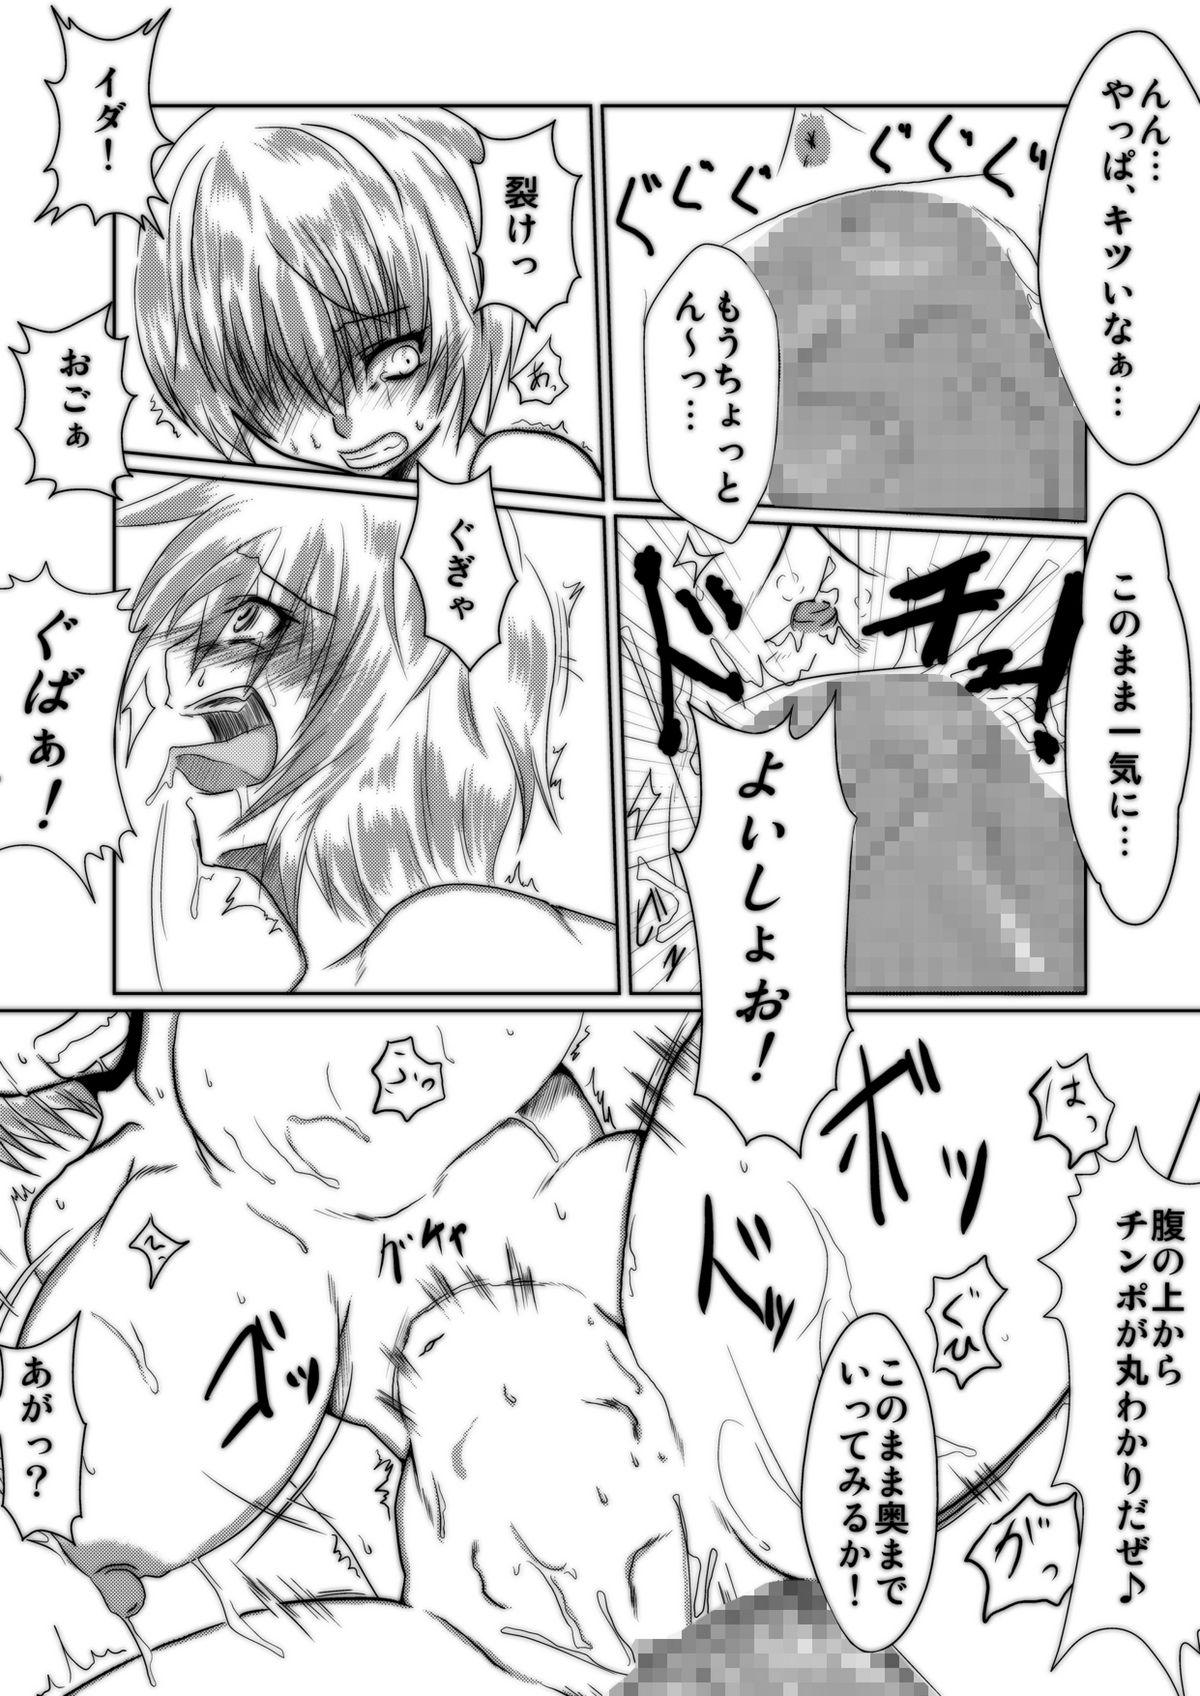 Orgasms Bakunyuna Ayanami-san to no sei katsu! | Sexual activity with Rei's breasts! - Neon genesis evangelion Caseiro - Page 9